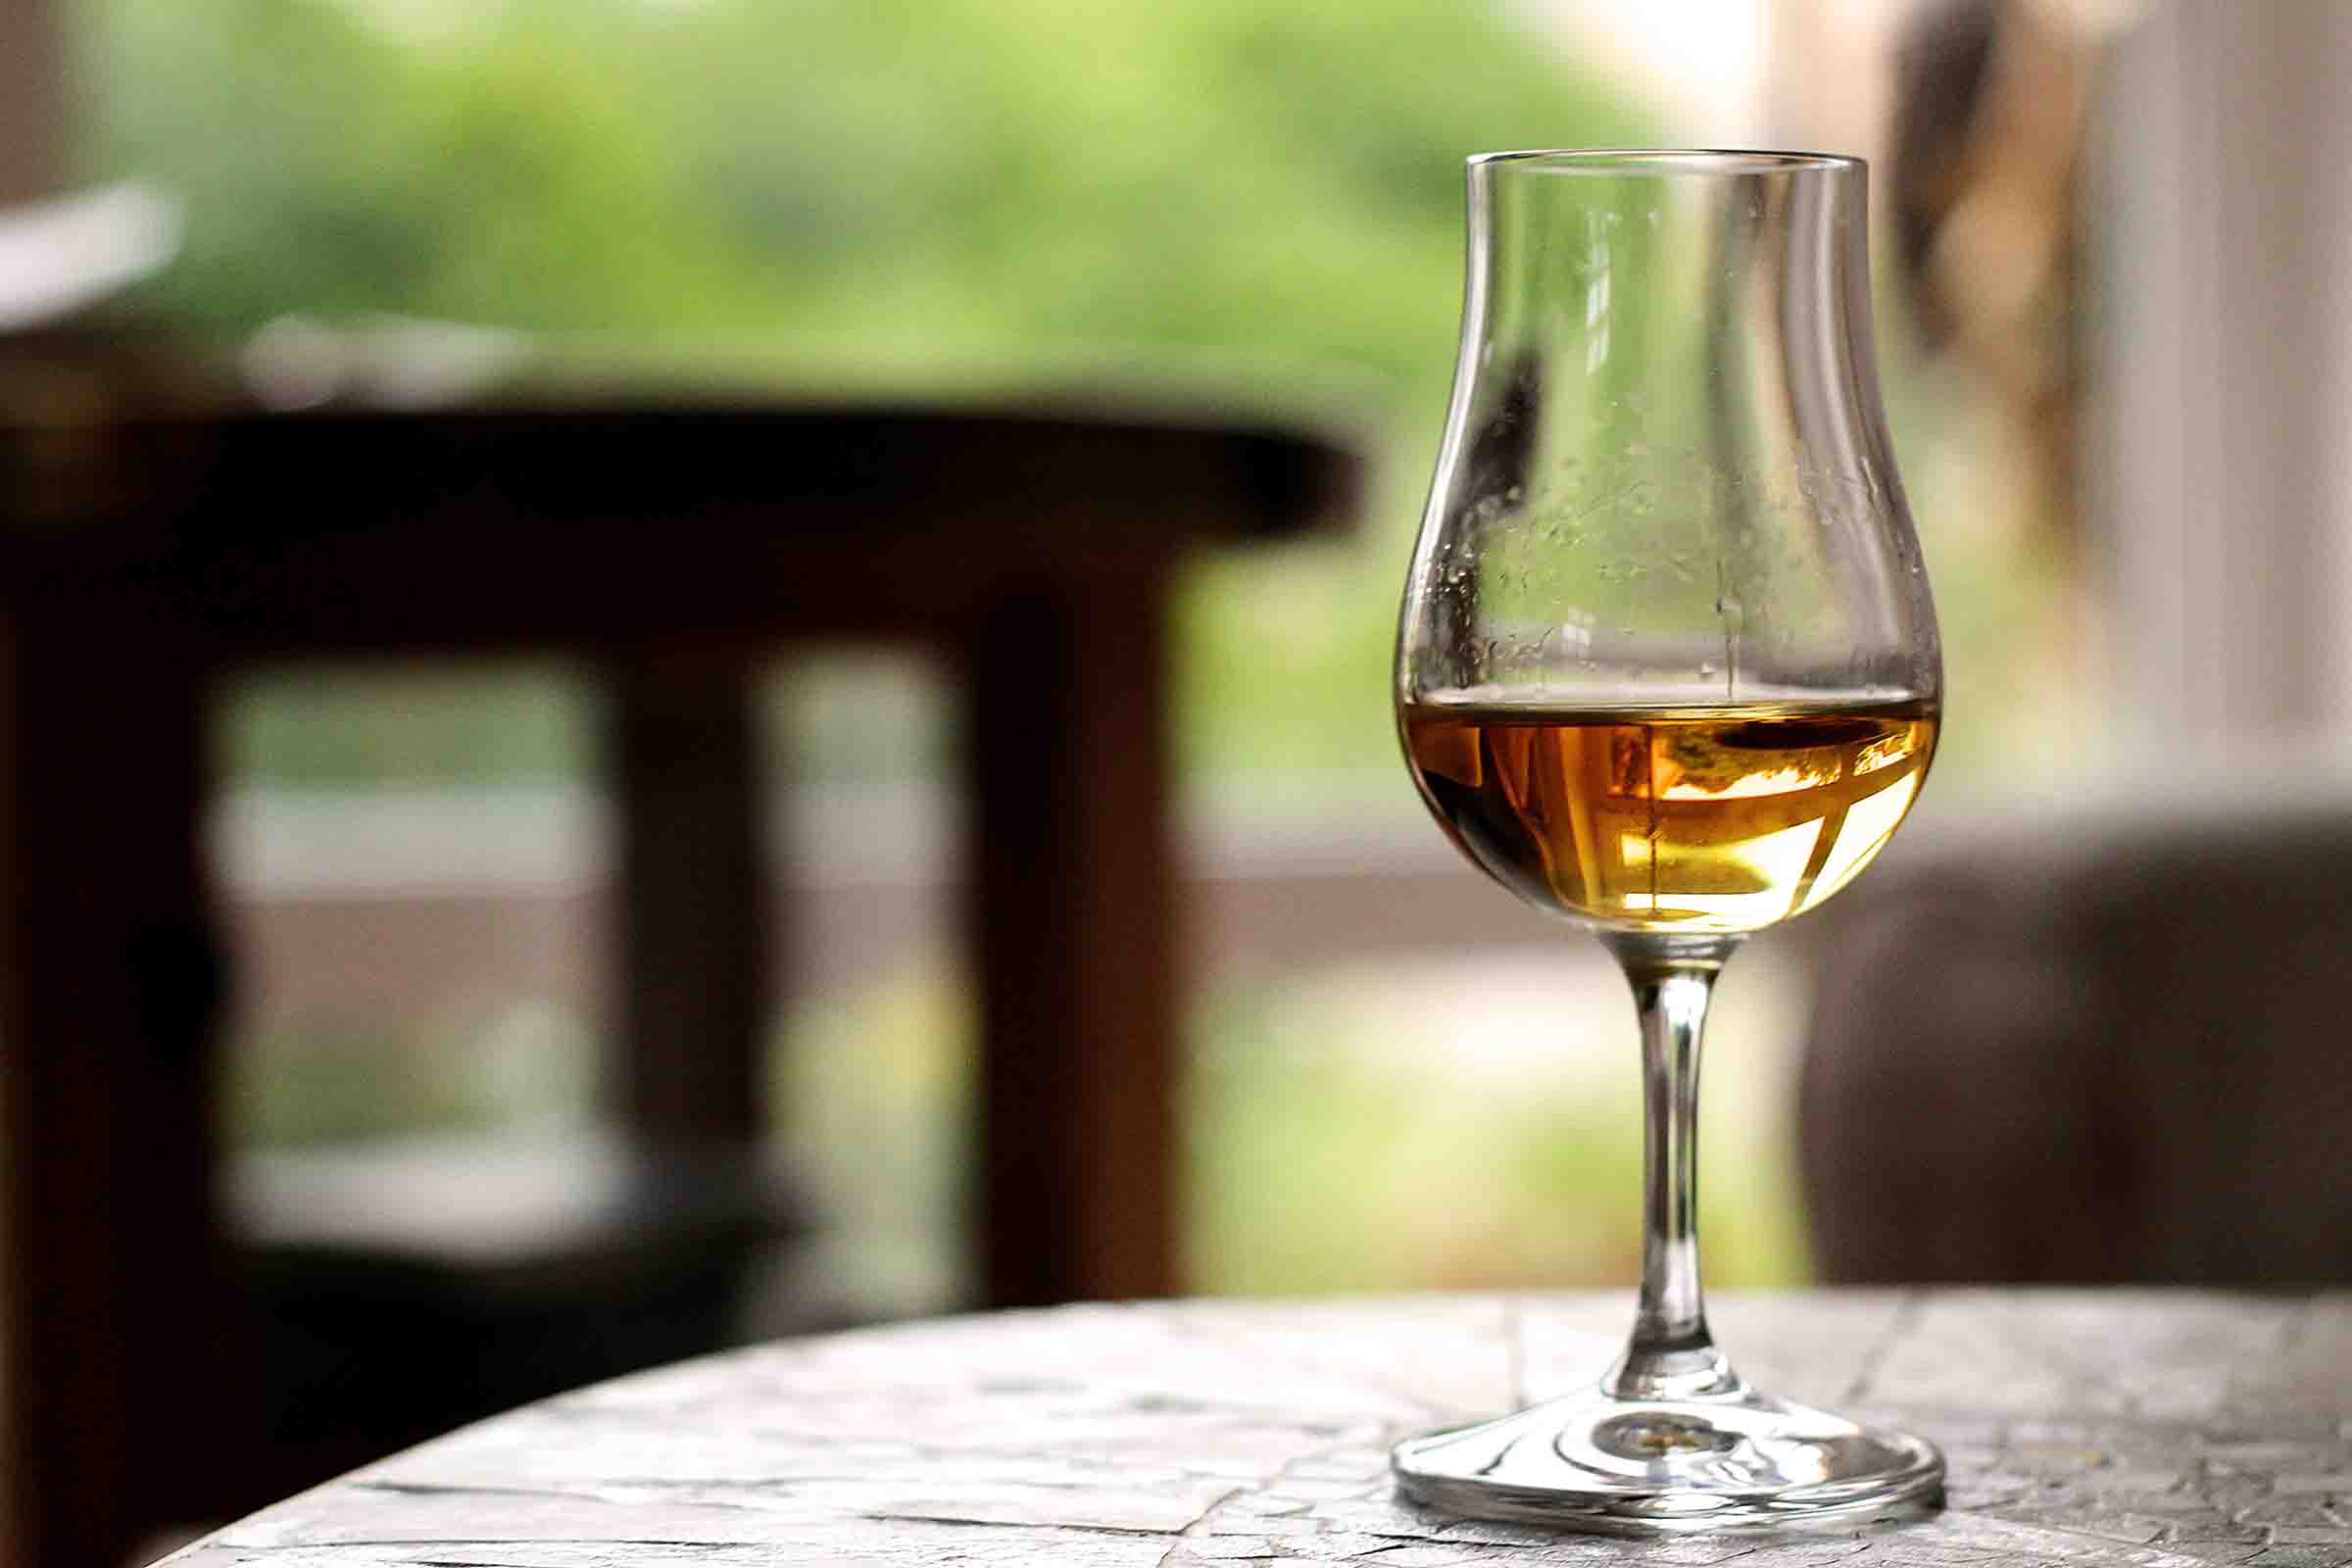 Whiskeyprovning: En smakupplevelse av en av världens mest populära spritsorter